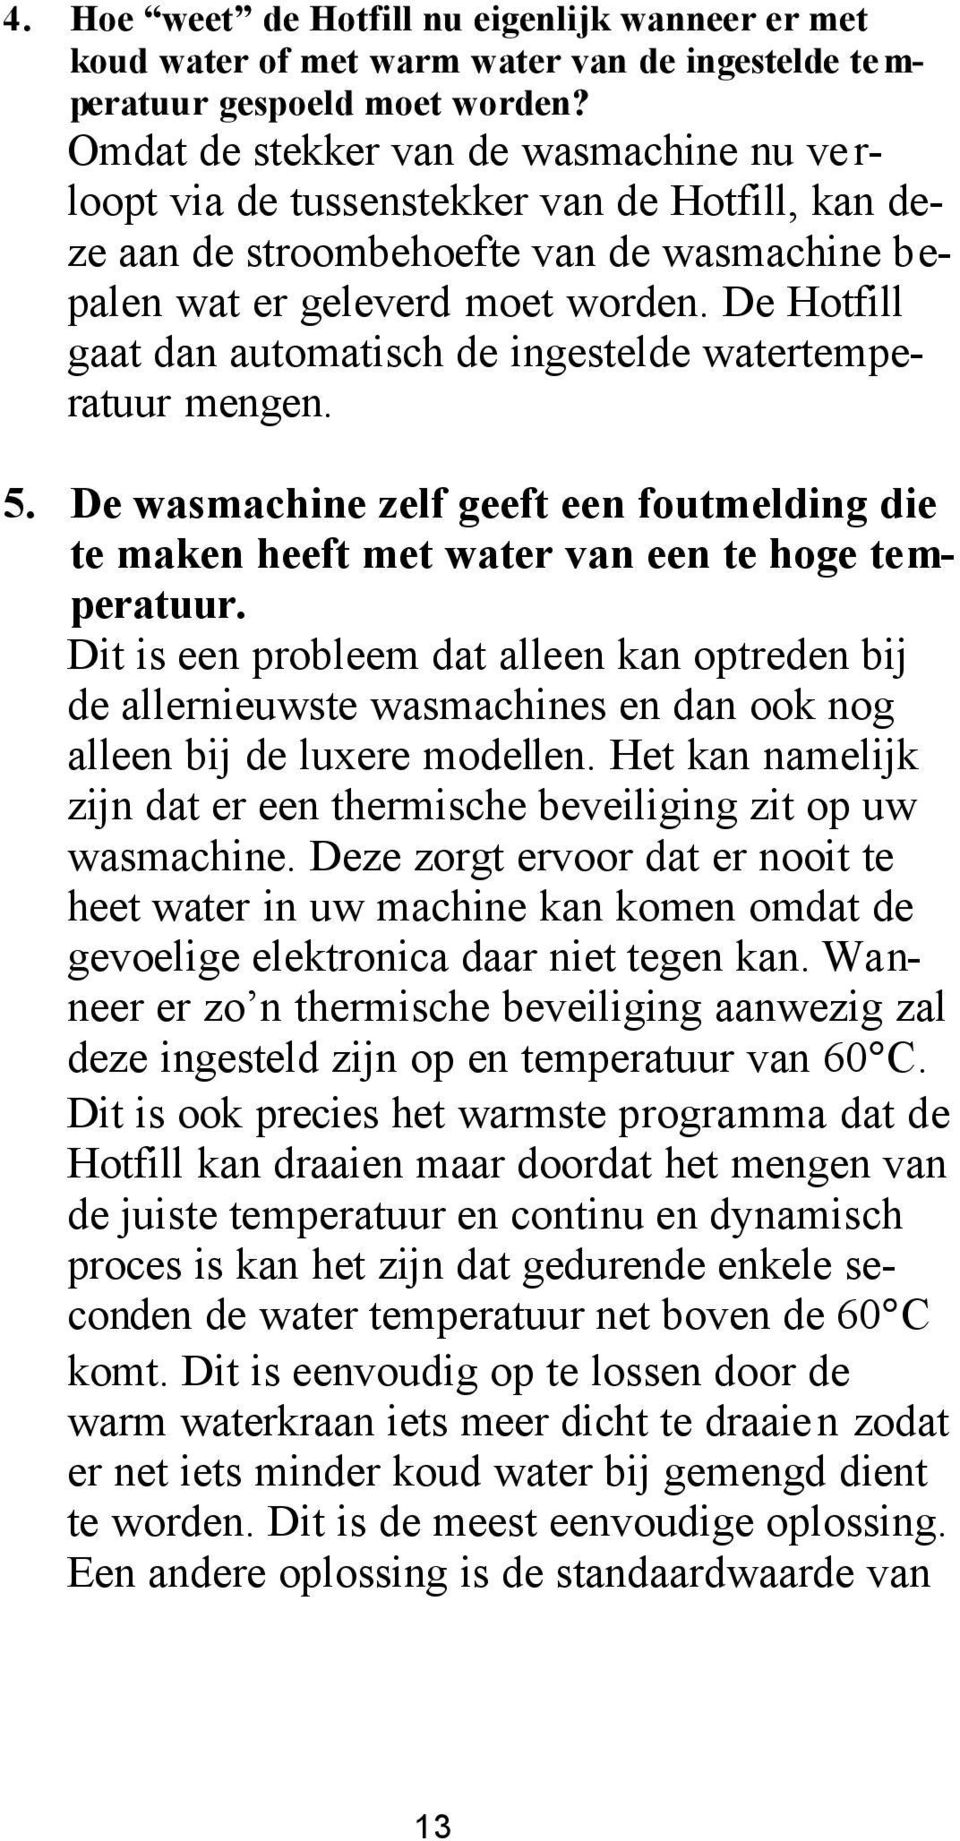 De Hotfill gaat dan automatisch de ingestelde watertemperatuur mengen. 5. De wasmachine zelf geeft een foutmelding die te maken heeft met water van een te hoge temperatuur.